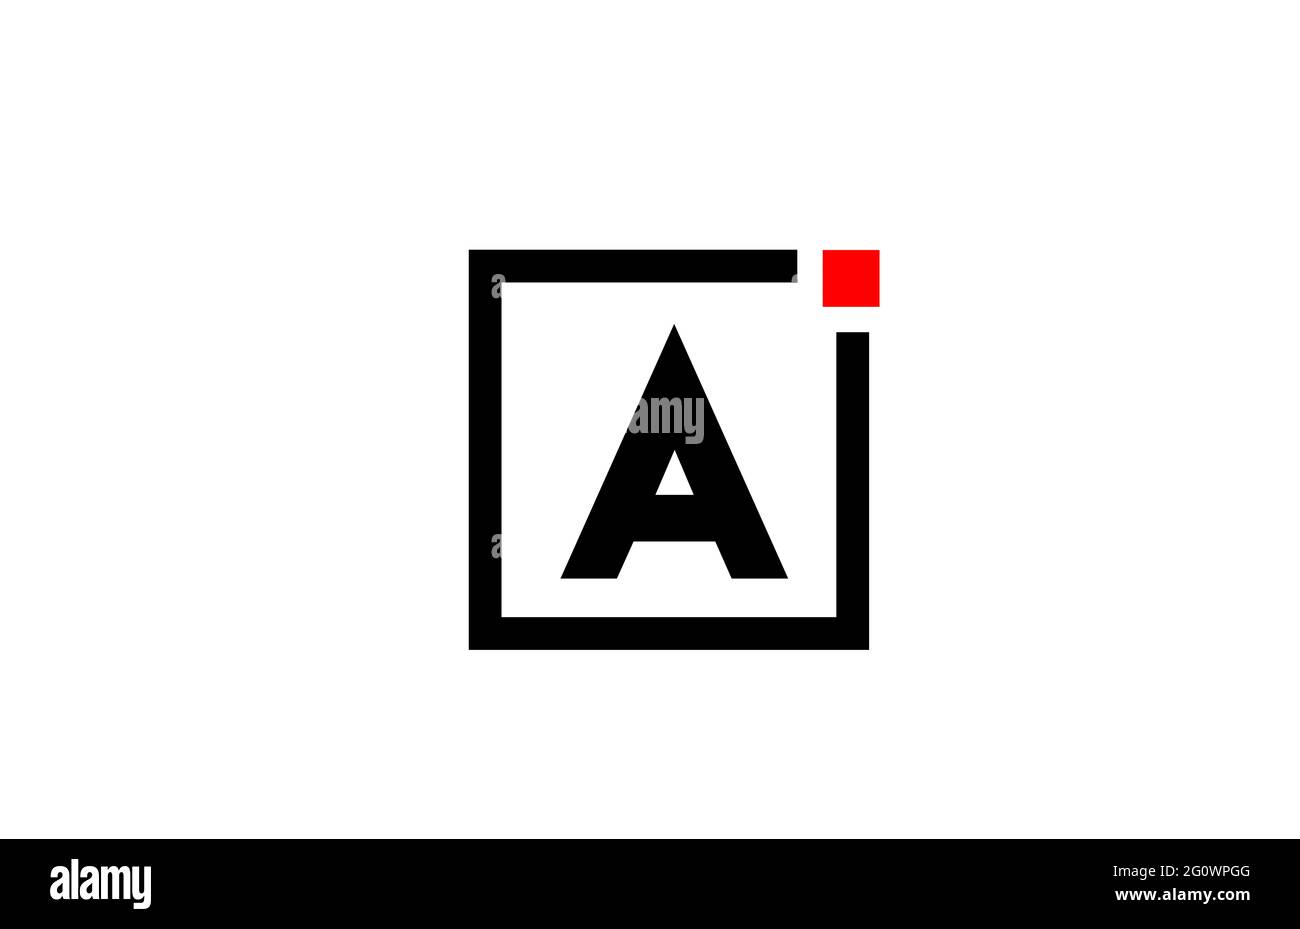 Un logo con l'icona di una lettera alfabetica in bianco e nero. Design aziendale e aziendale con punto quadrato e rosso. Modello di identità aziendale creativa Foto Stock